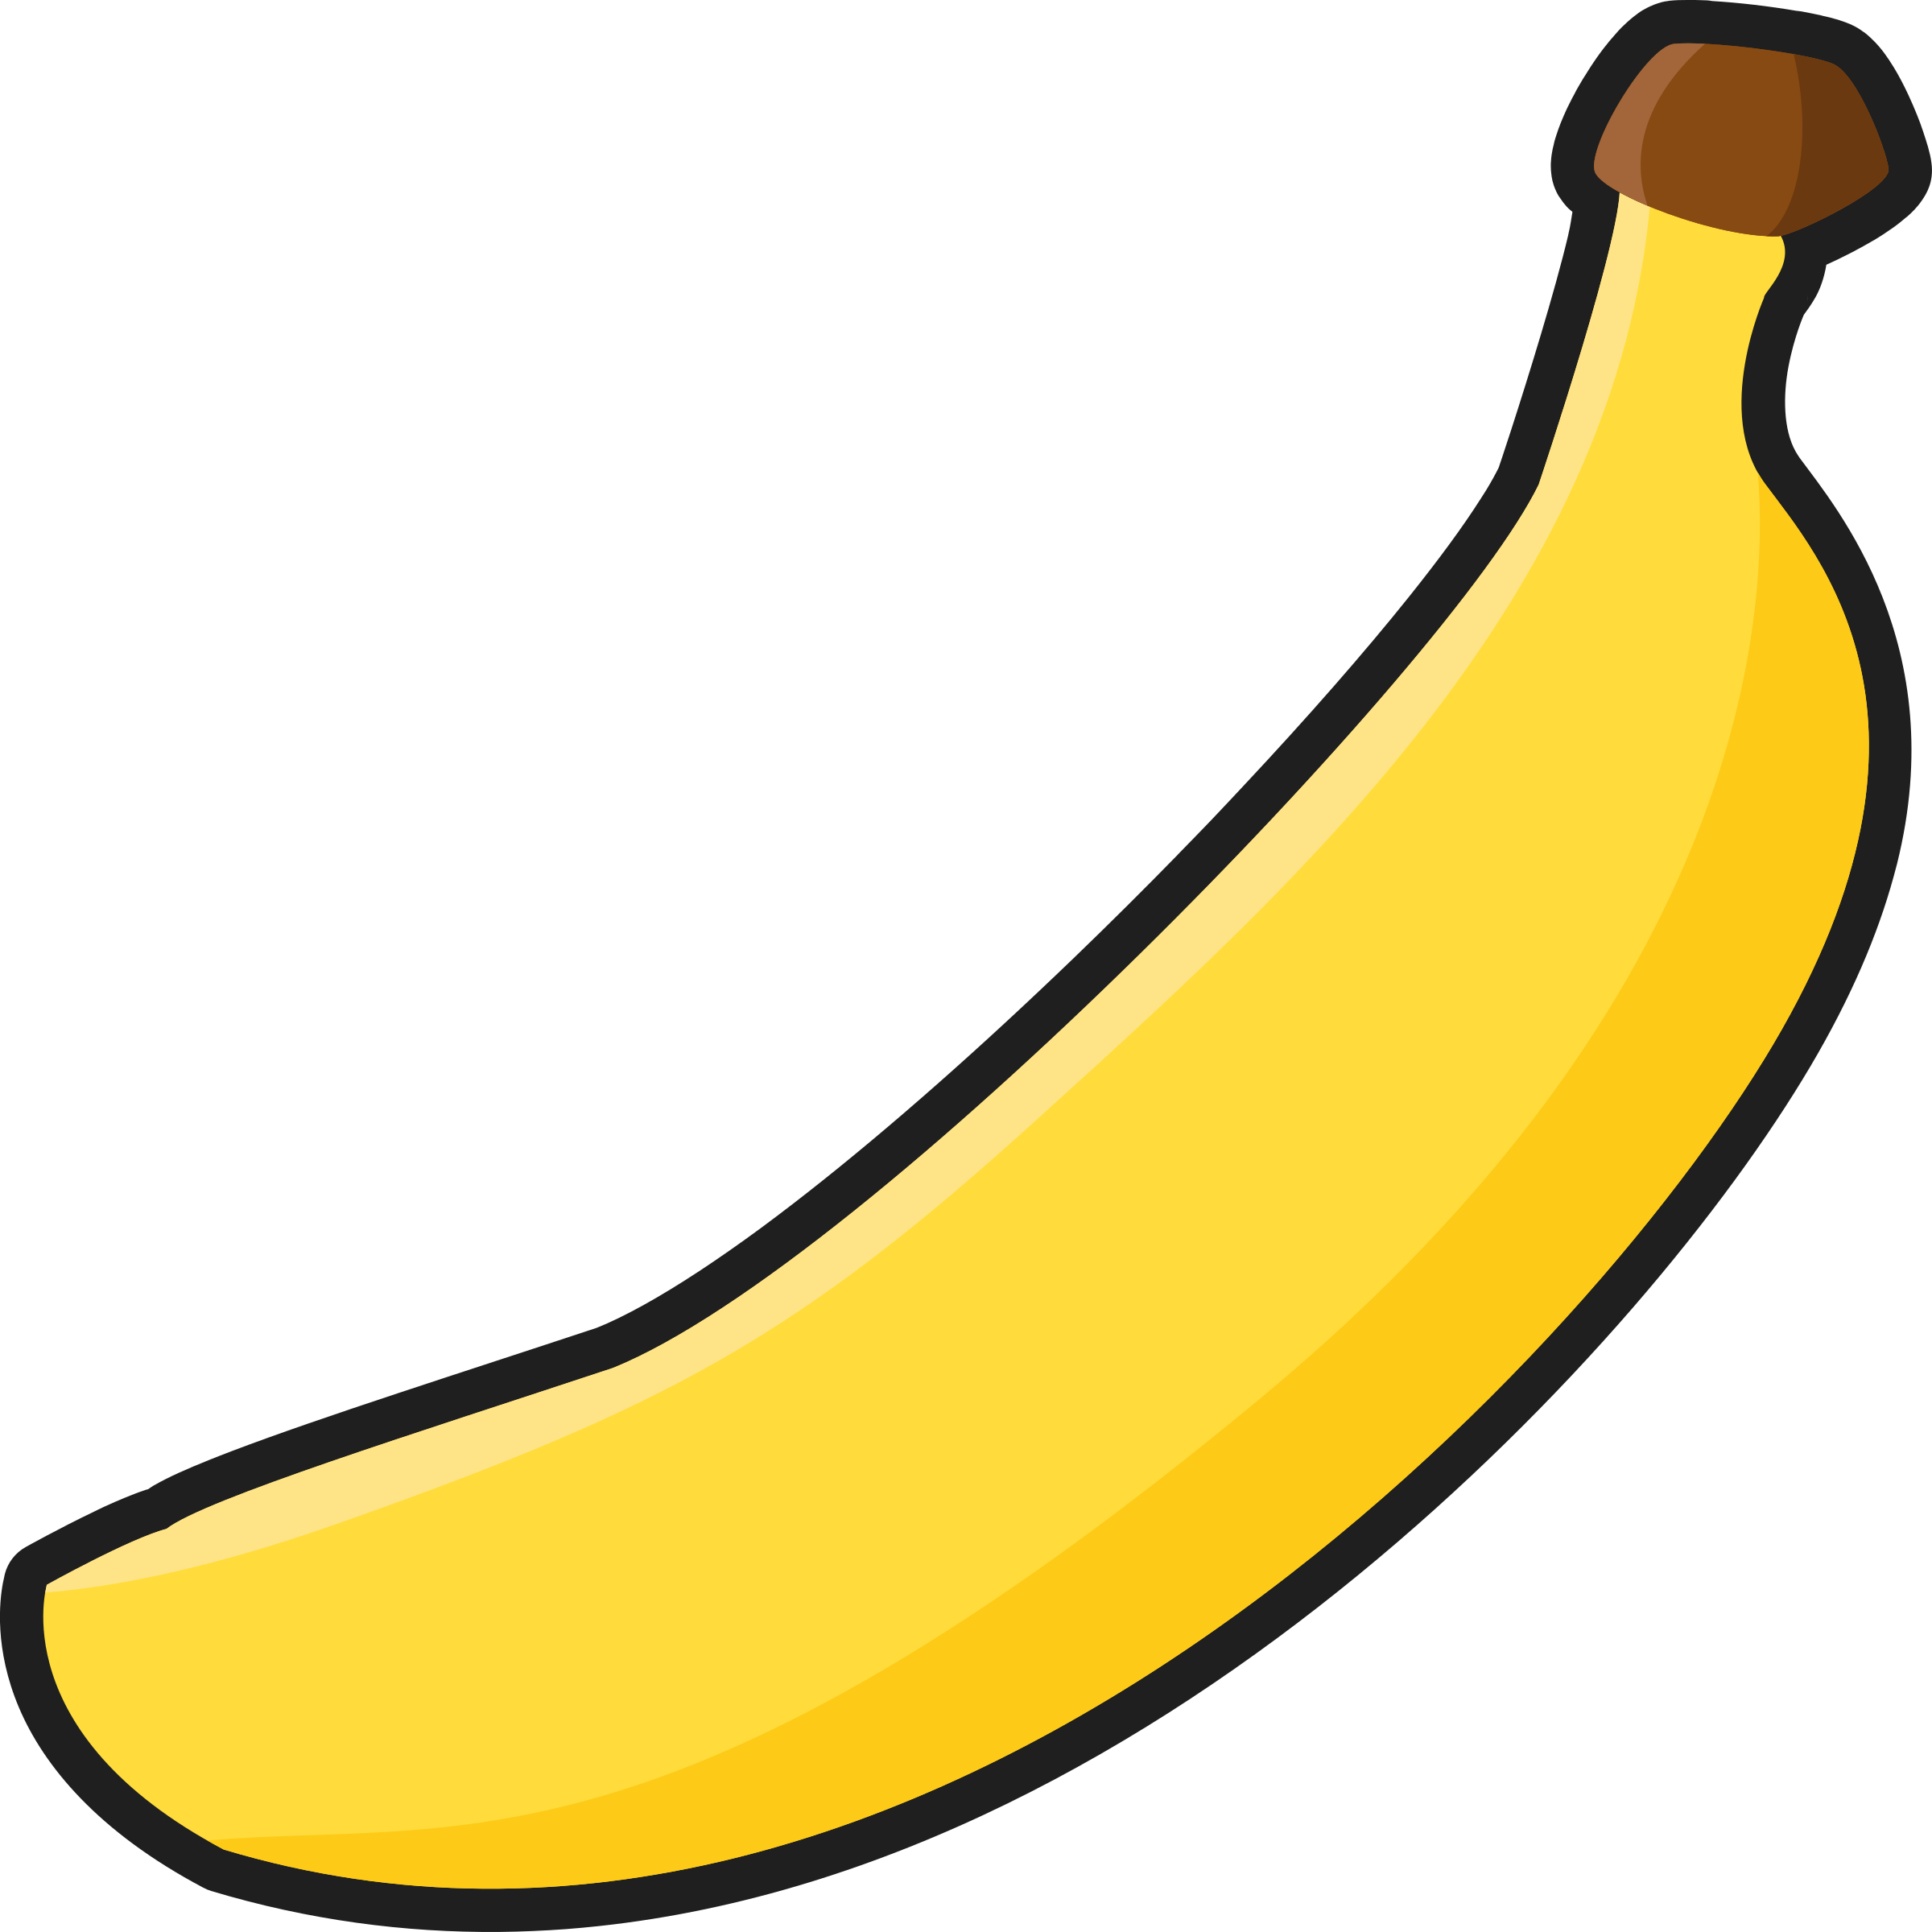 Banana clipart free clip art 